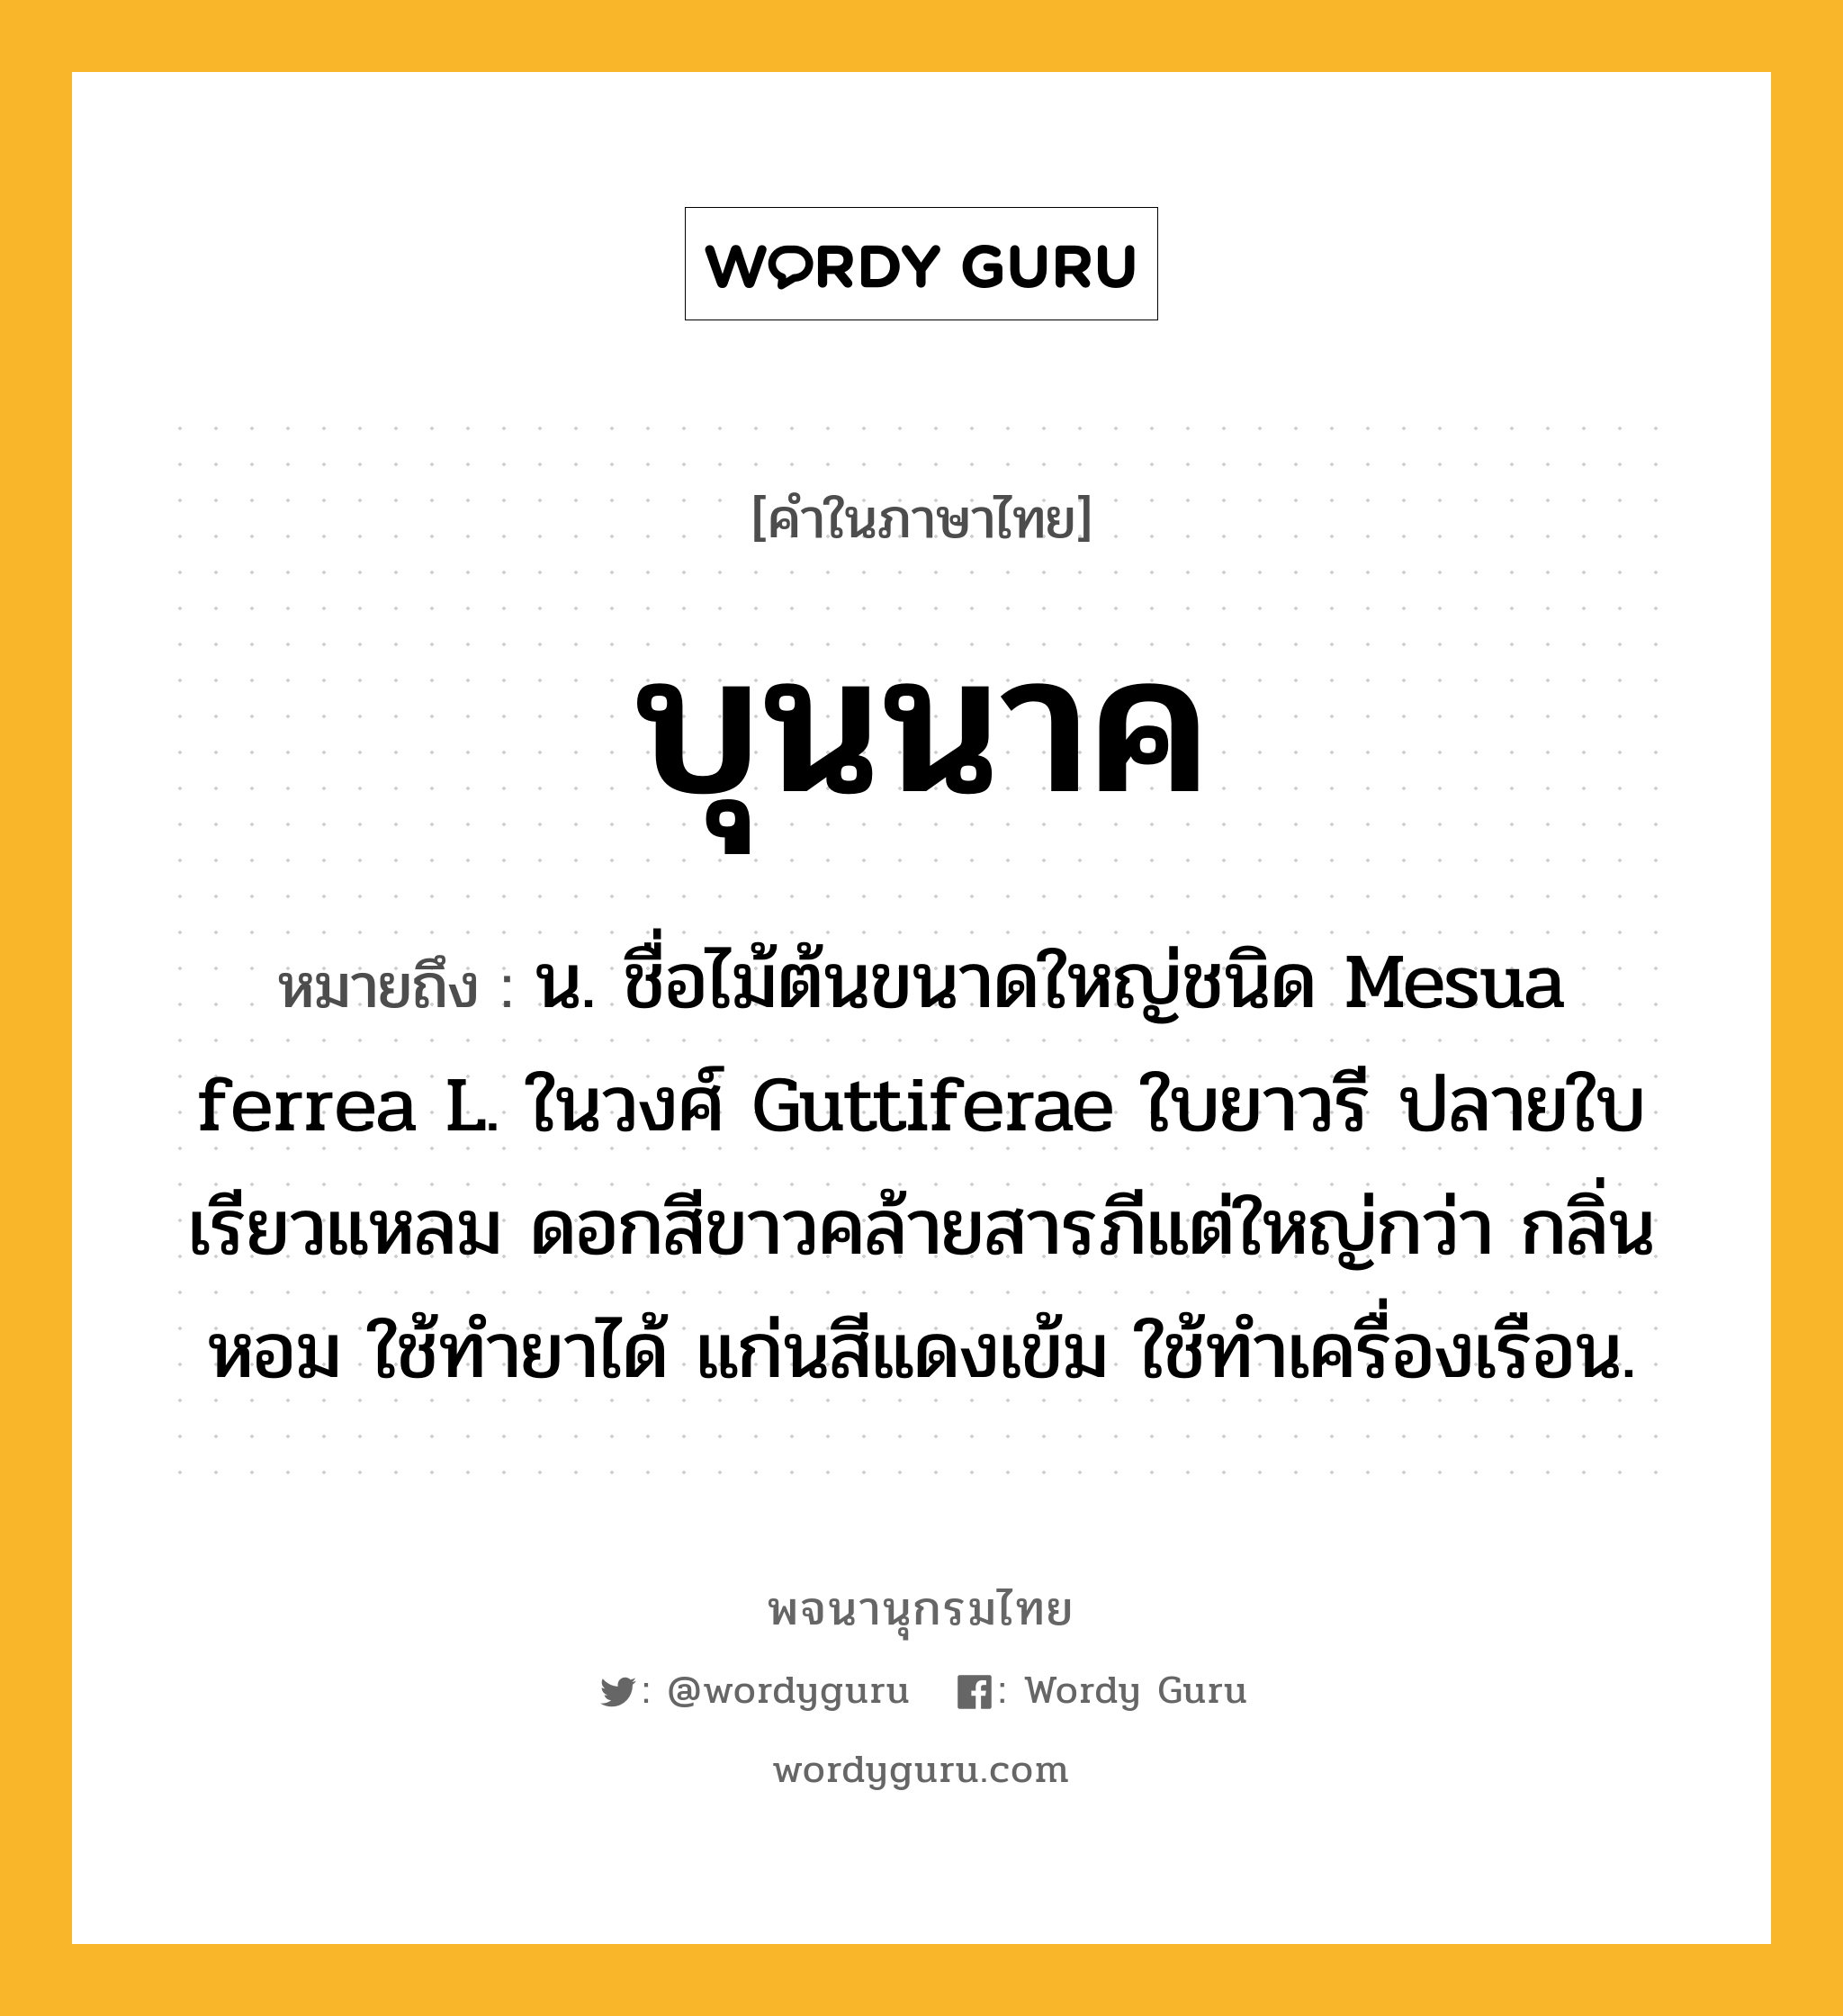 บุนนาค ความหมาย หมายถึงอะไร?, คำในภาษาไทย บุนนาค หมายถึง น. ชื่อไม้ต้นขนาดใหญ่ชนิด Mesua ferrea L. ในวงศ์ Guttiferae ใบยาวรี ปลายใบเรียวแหลม ดอกสีขาวคล้ายสารภีแต่ใหญ่กว่า กลิ่นหอม ใช้ทํายาได้ แก่นสีแดงเข้ม ใช้ทําเครื่องเรือน.